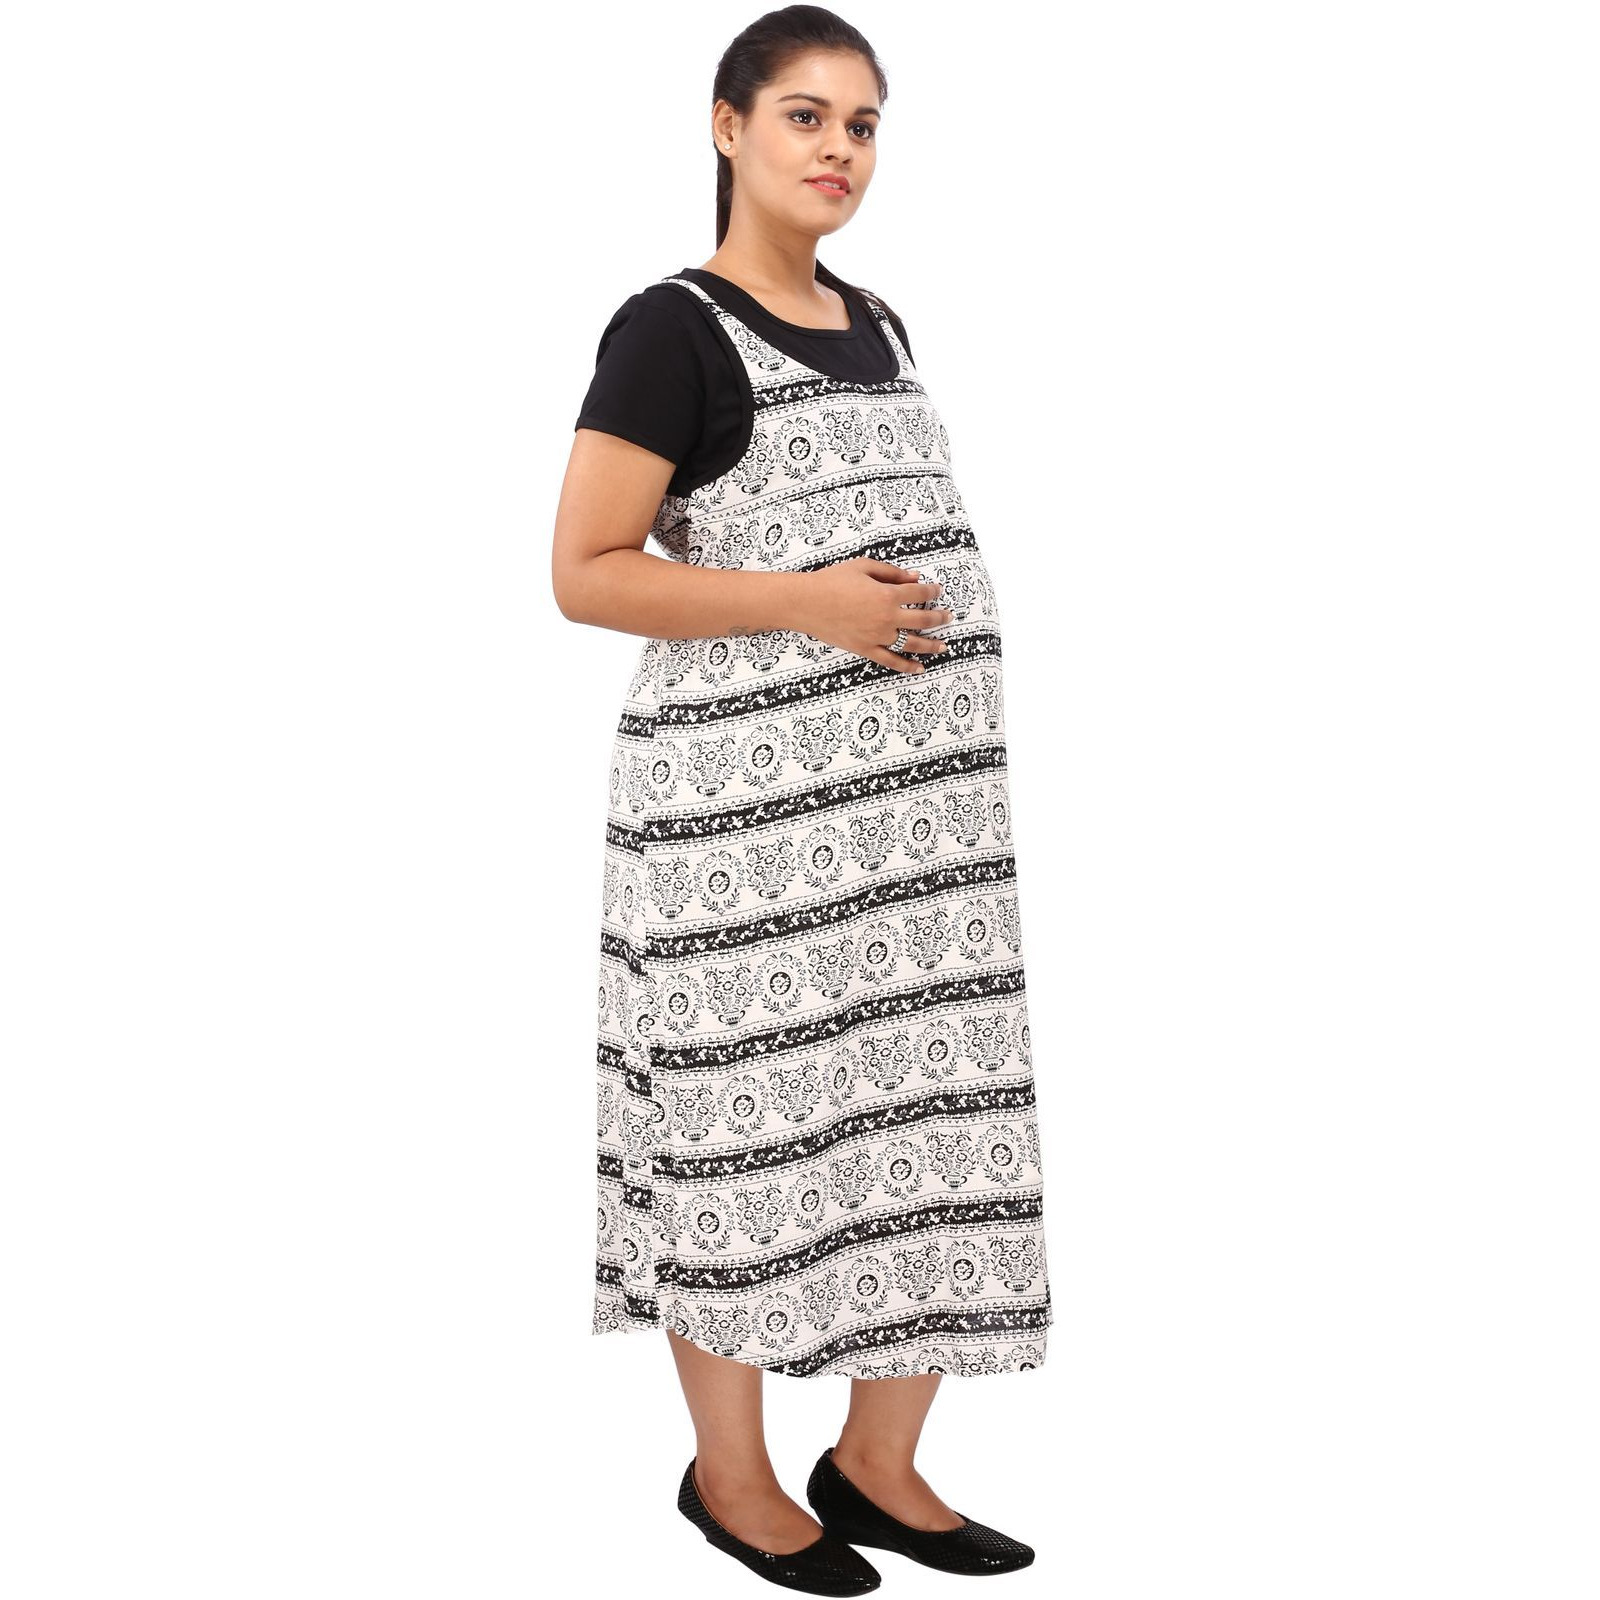 Mamma's Maternity Women's Rayon Printed Black Maternity Dress (Size:M)